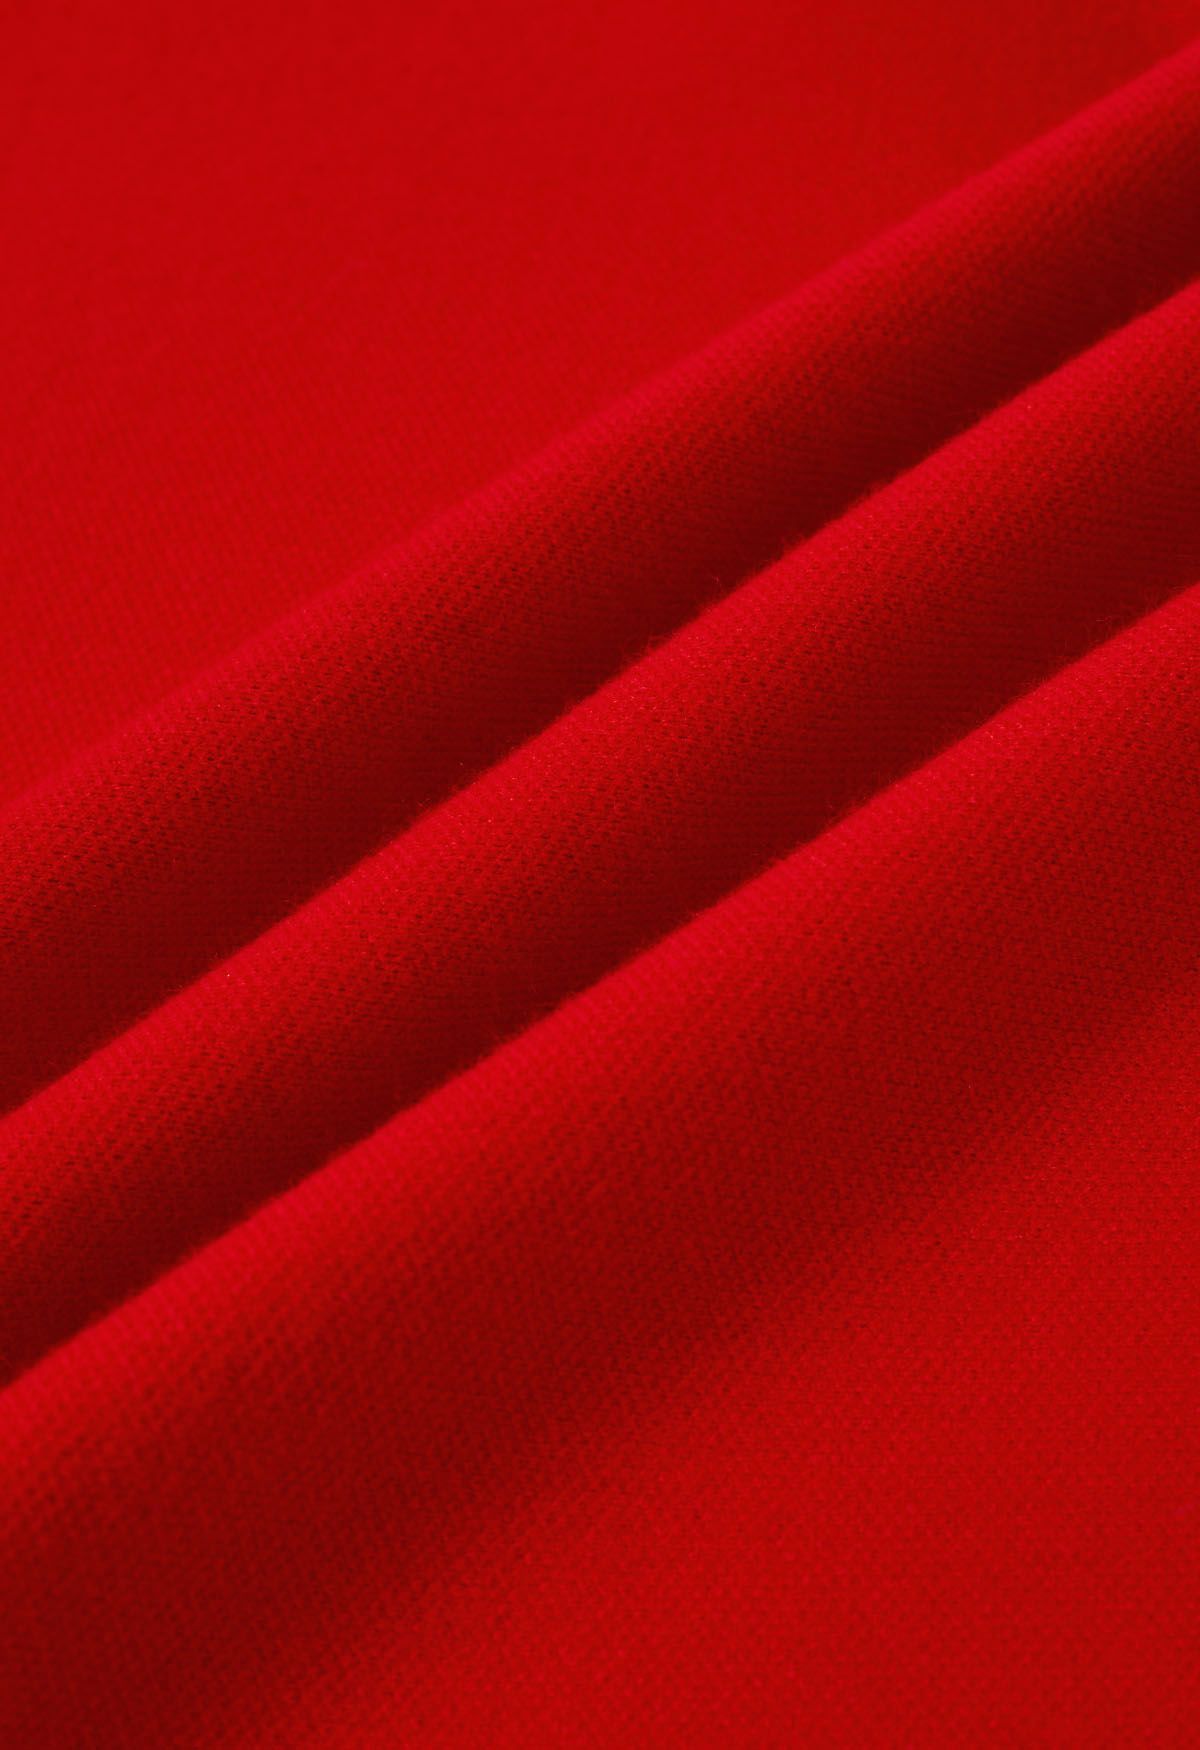 Poncho en tricot à ourlet fendu et manches en fausse fourrure en rouge